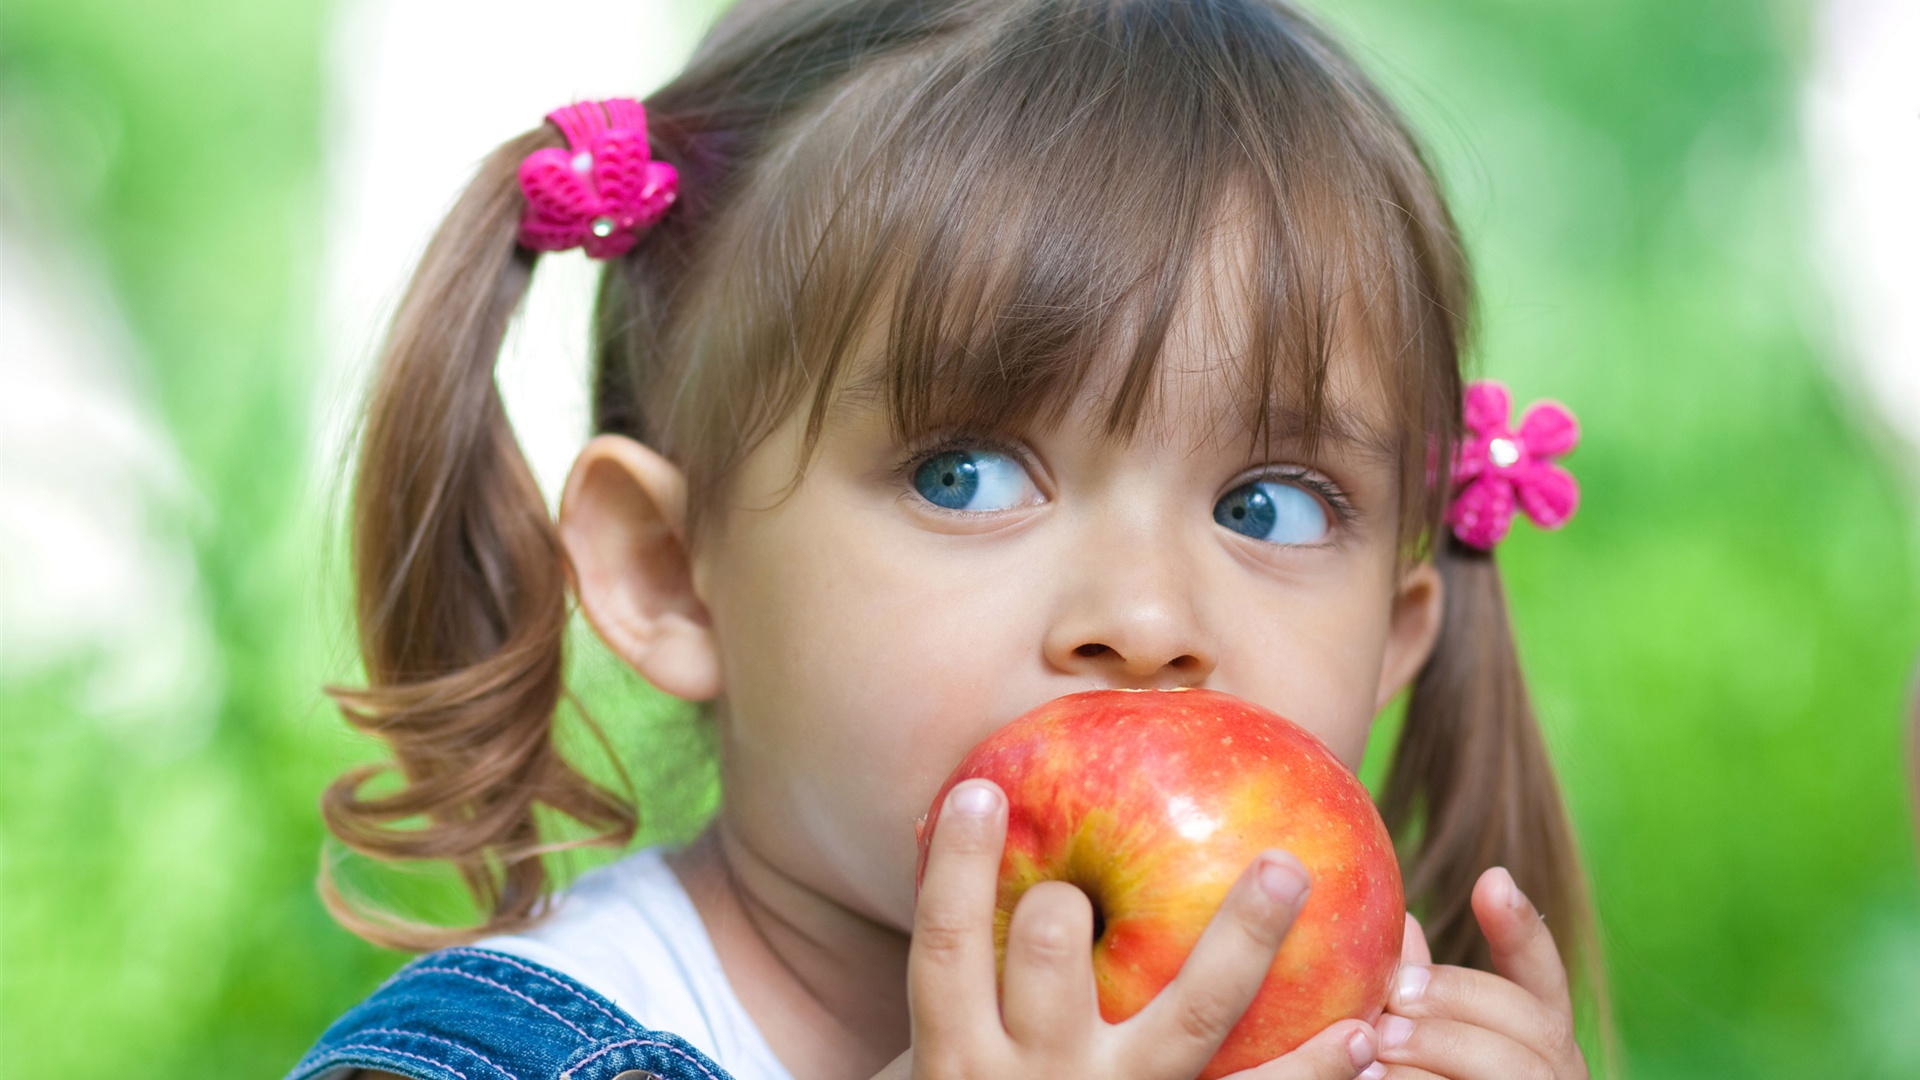 Cute-little-girl-eating-apple_1920x1080.jpg